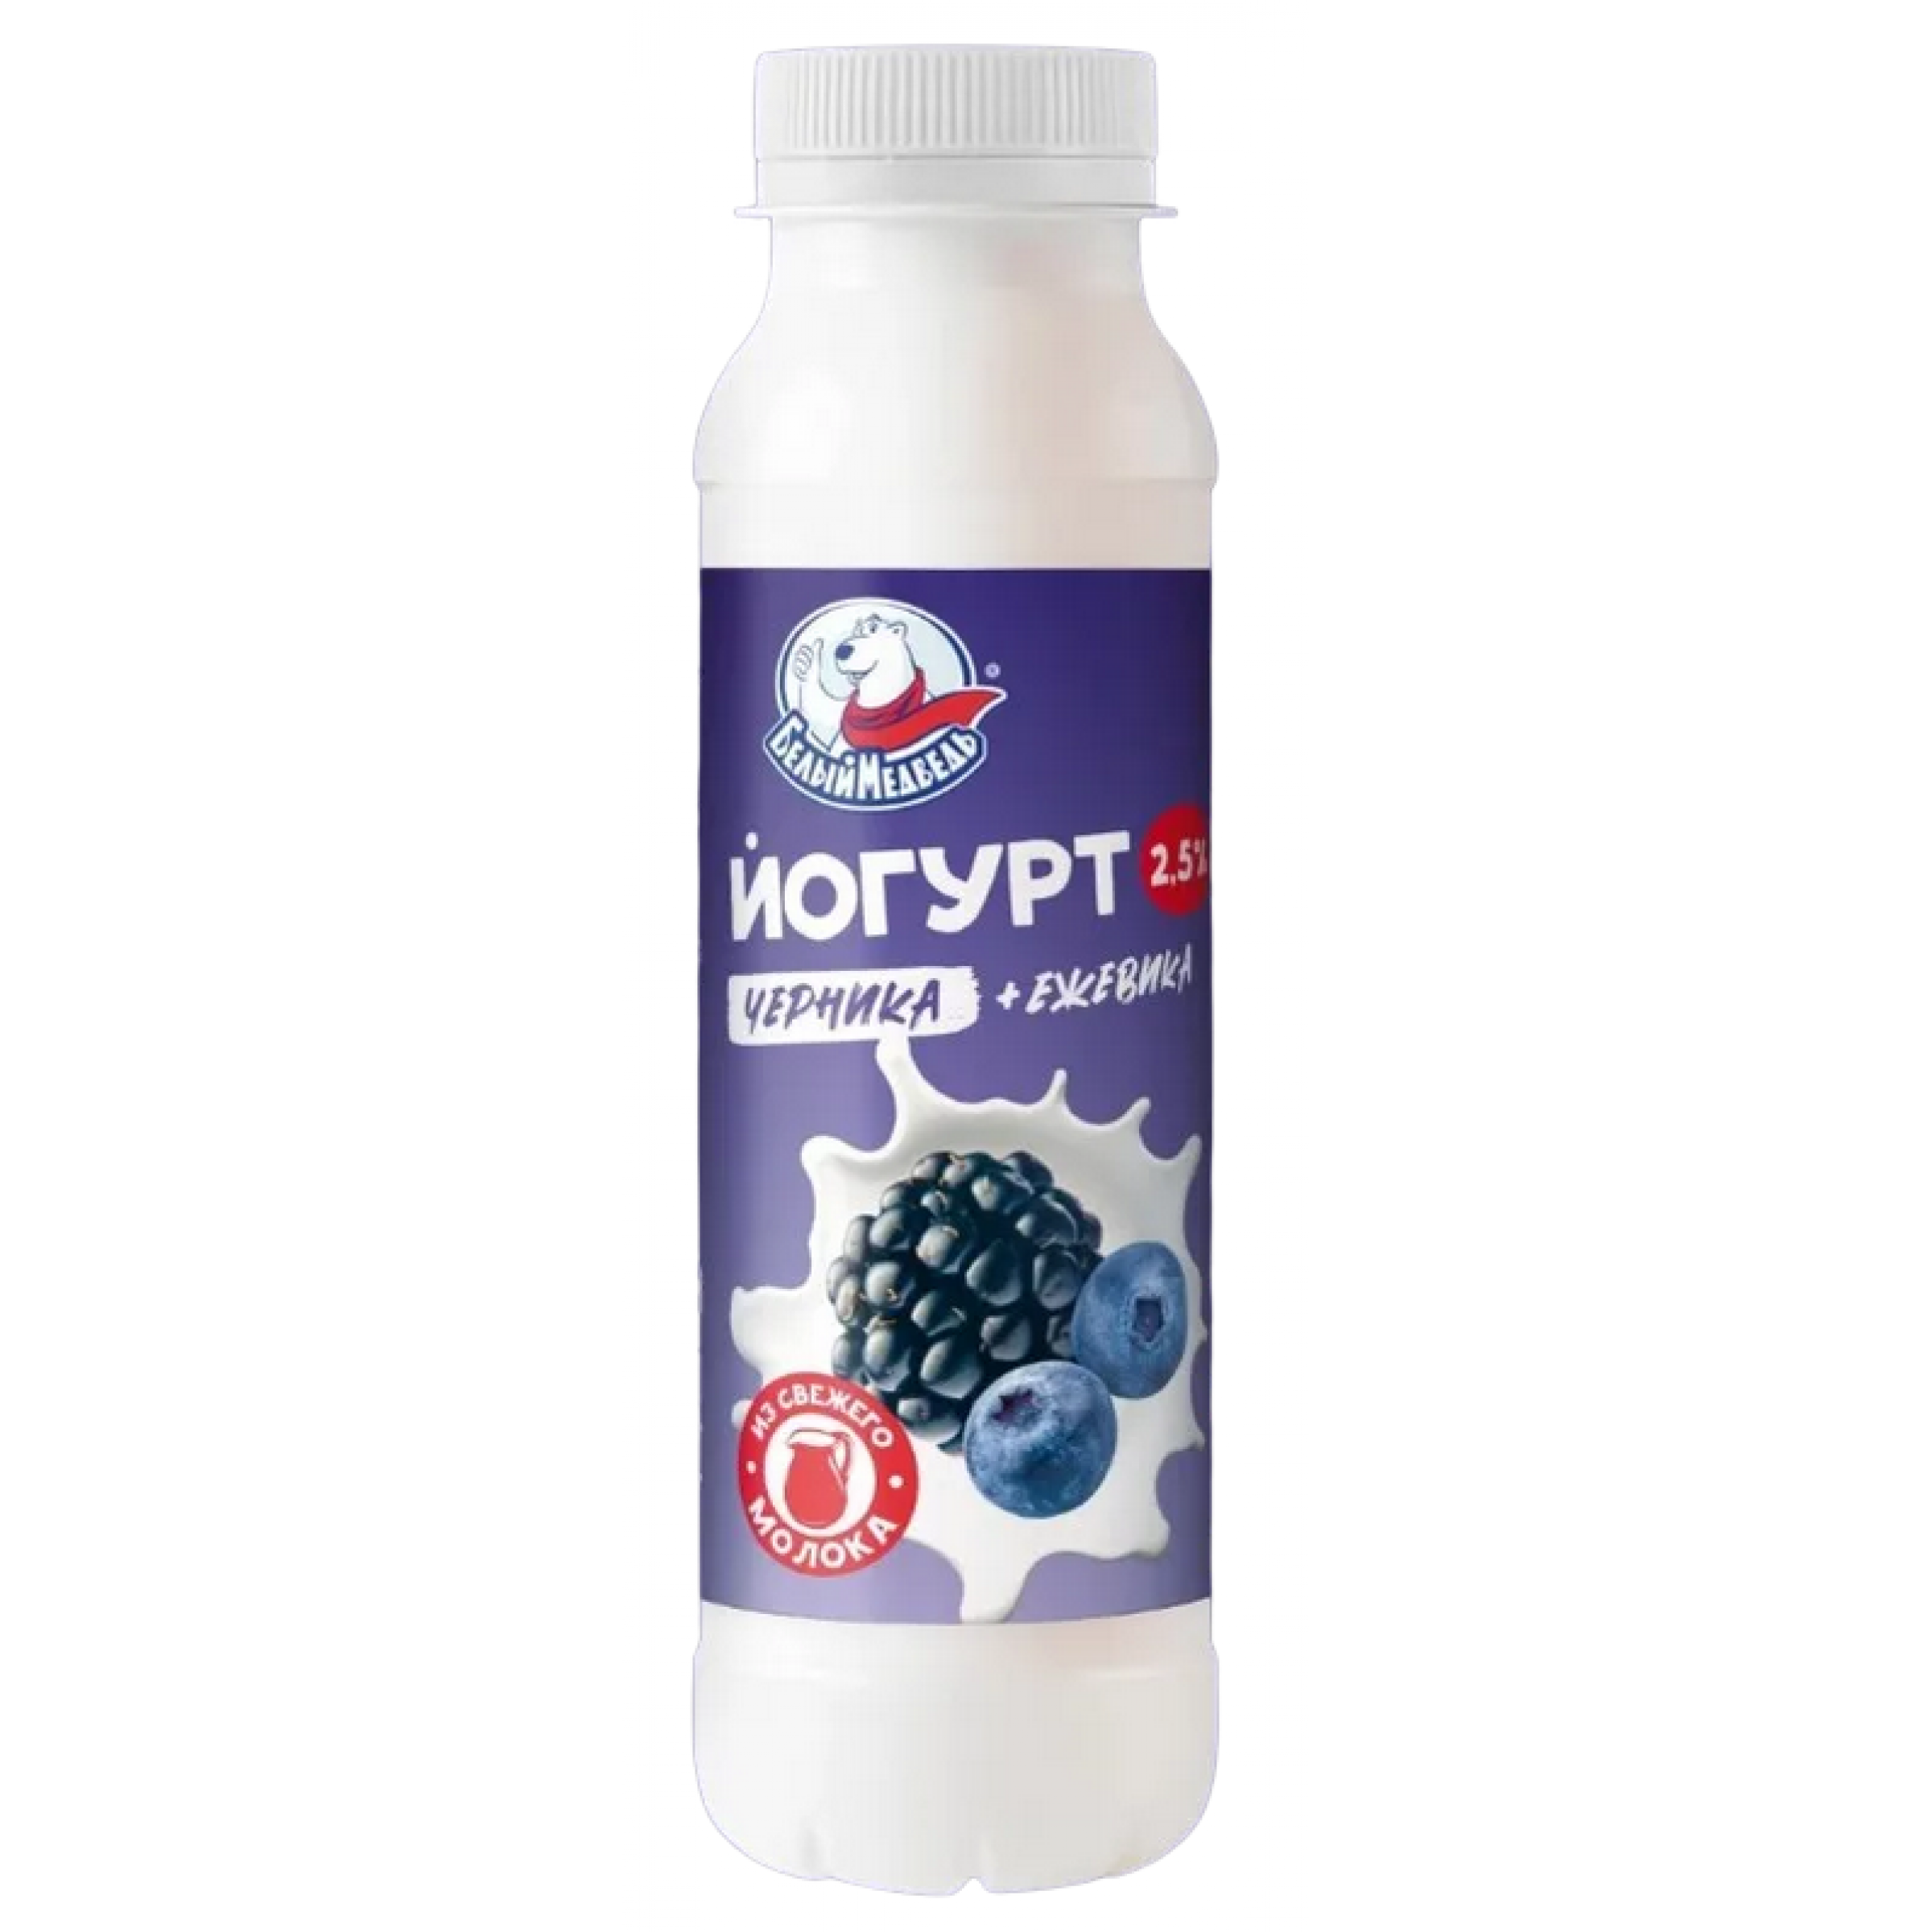 Йогурт питьевой черника-ежевика Белый Медведь 2,5%, 260 г